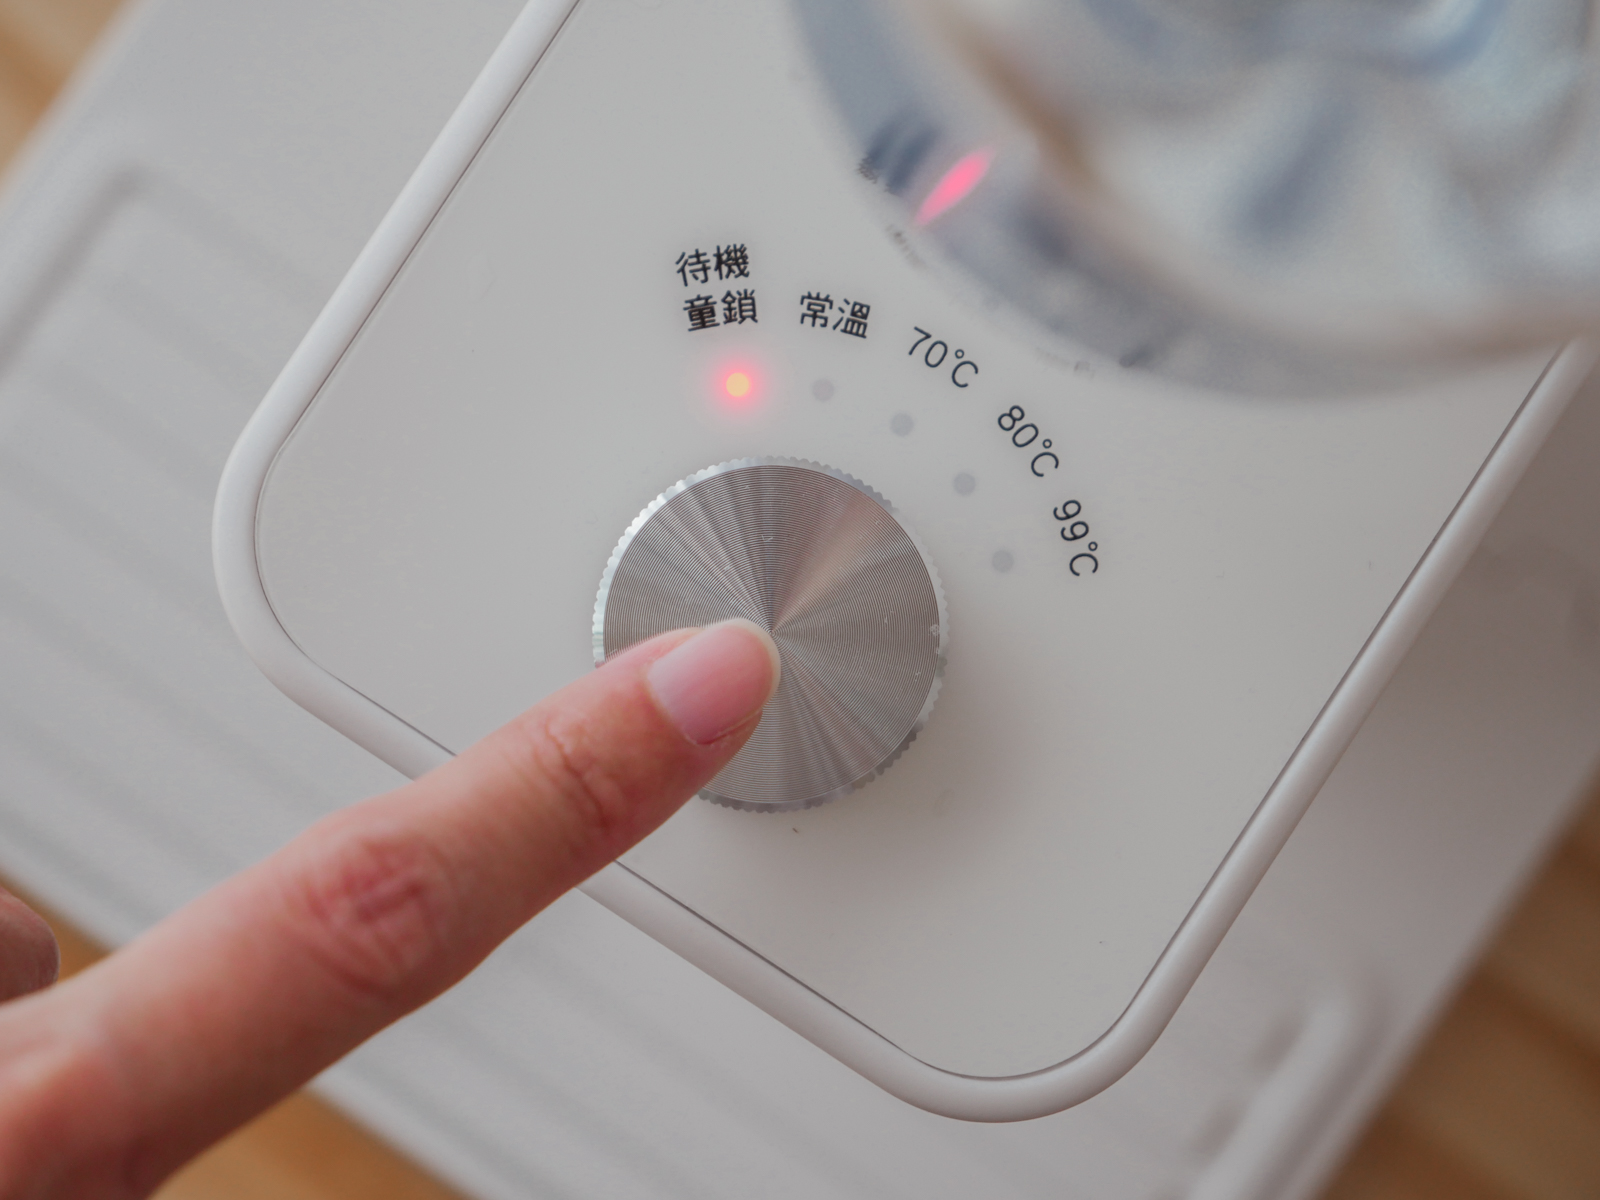 HERAN 禾聯 3秒瞬熱智能溫控飲水機 精緻小巧熱水不需等待